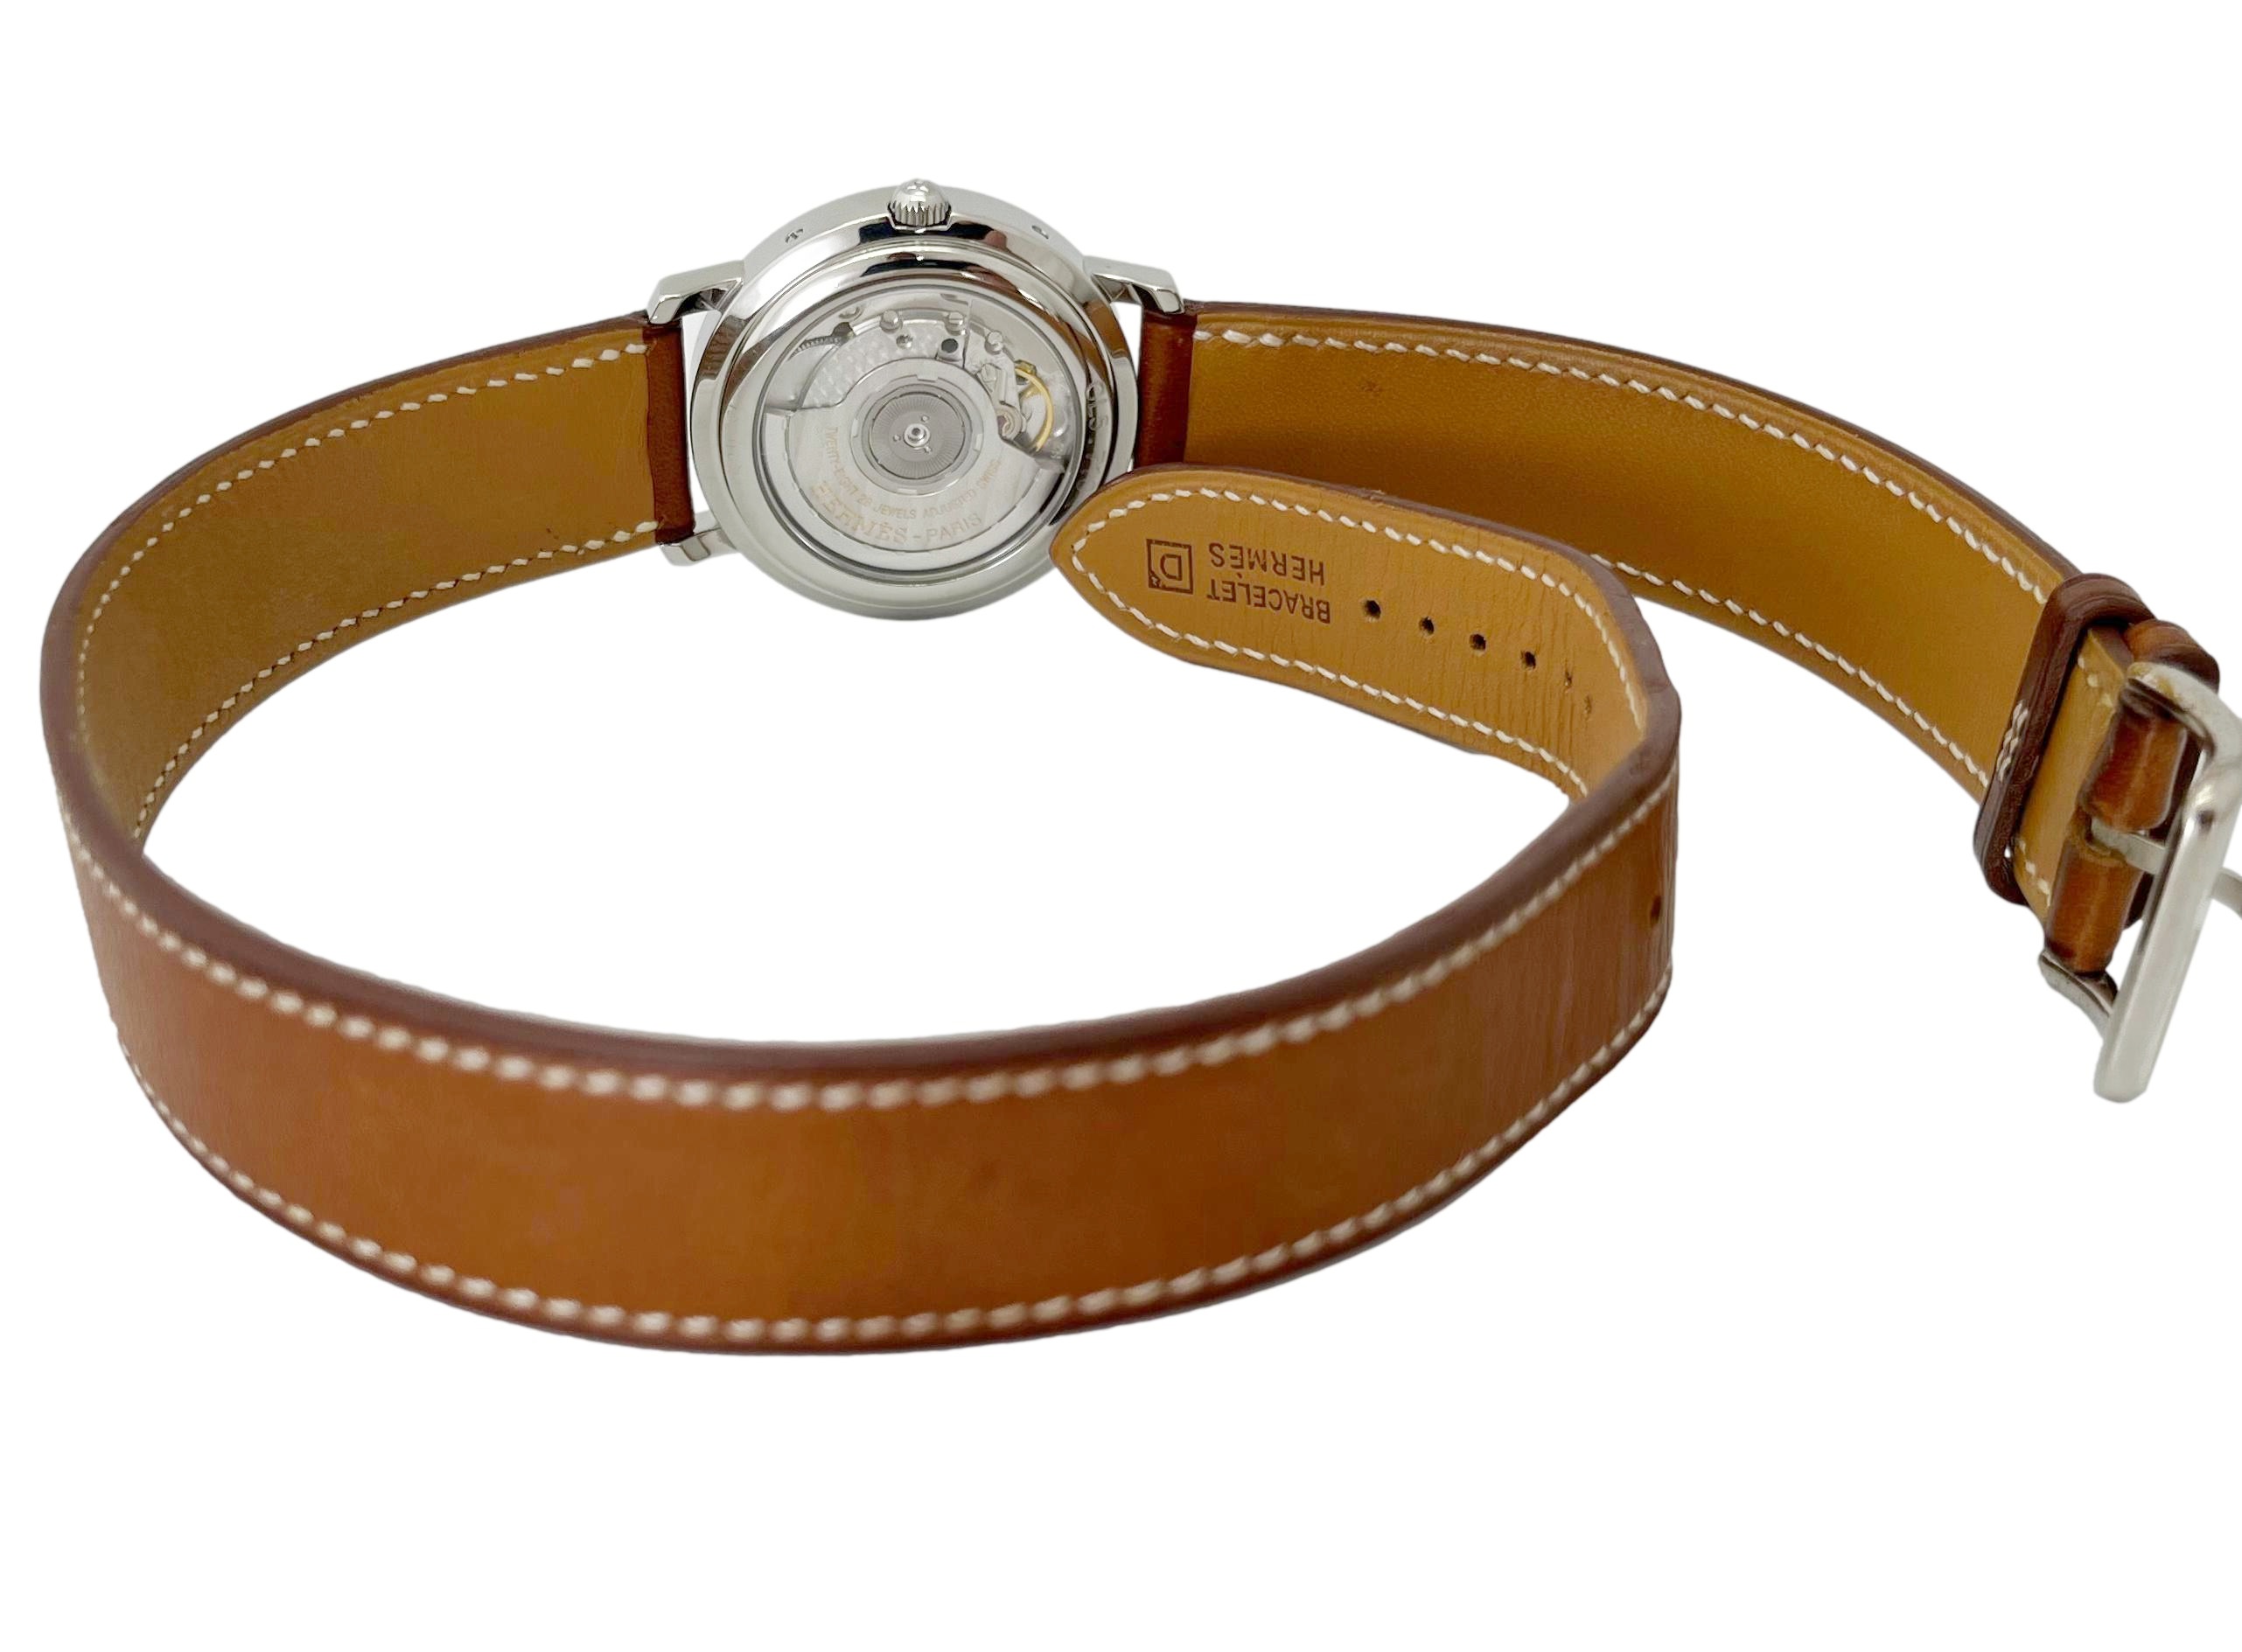 HERMES エルメス クリッパー CL5.710 ドゥブルトゥール パワーリザーブ 中古 メンズ 腕時計 自動巻き 白文字盤 外装仕上げ Aランク